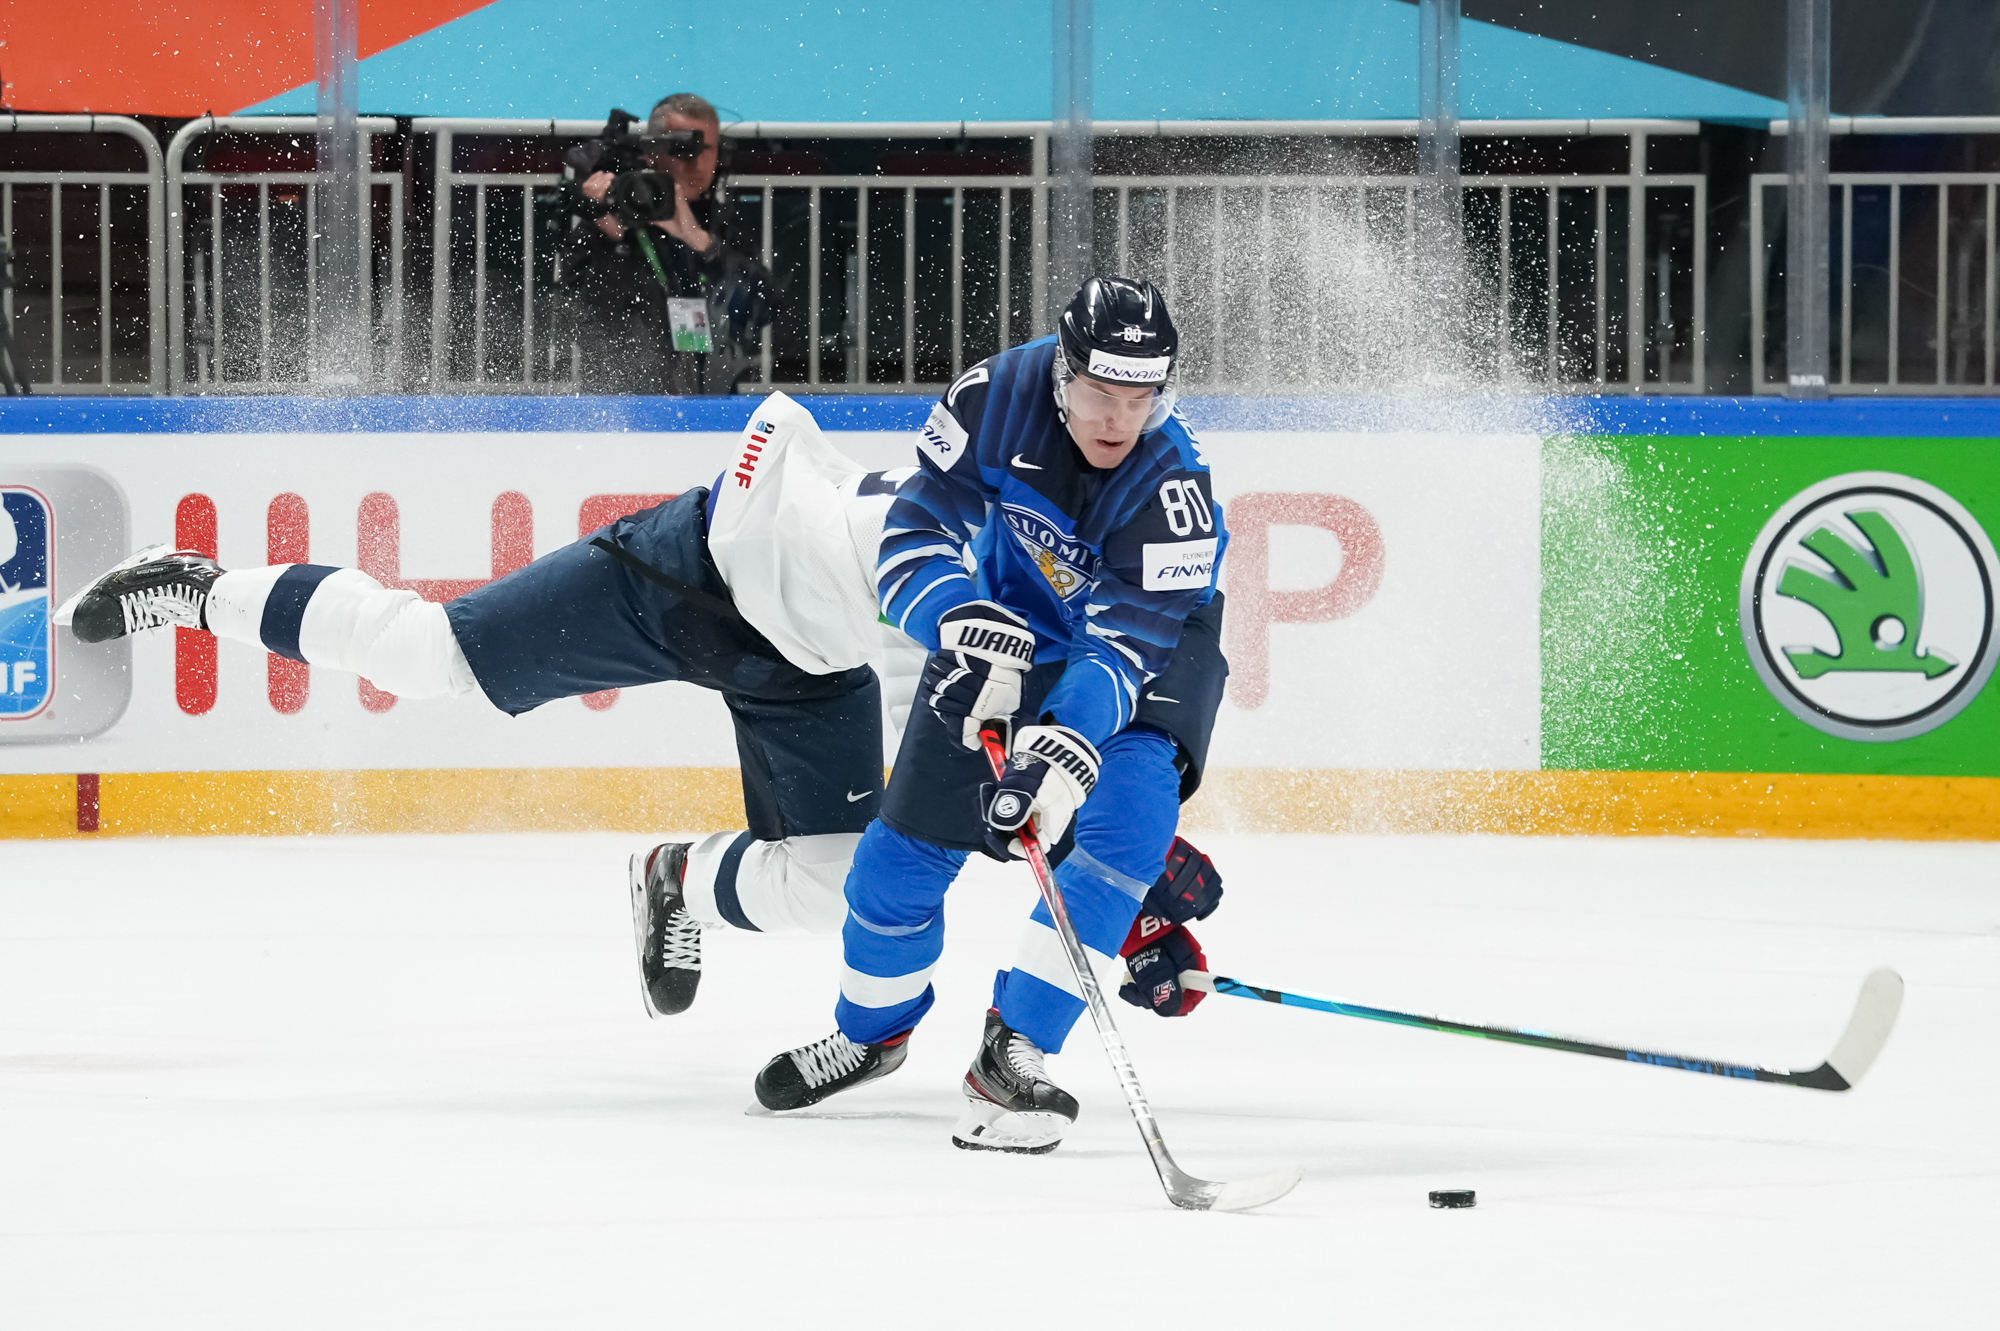 Чемпионат 21 22. Хоккей сборная Финляндии 2021. Ииро Пакаринен. Финляндия США хоккей. Финляндия хоккей чемпионы.